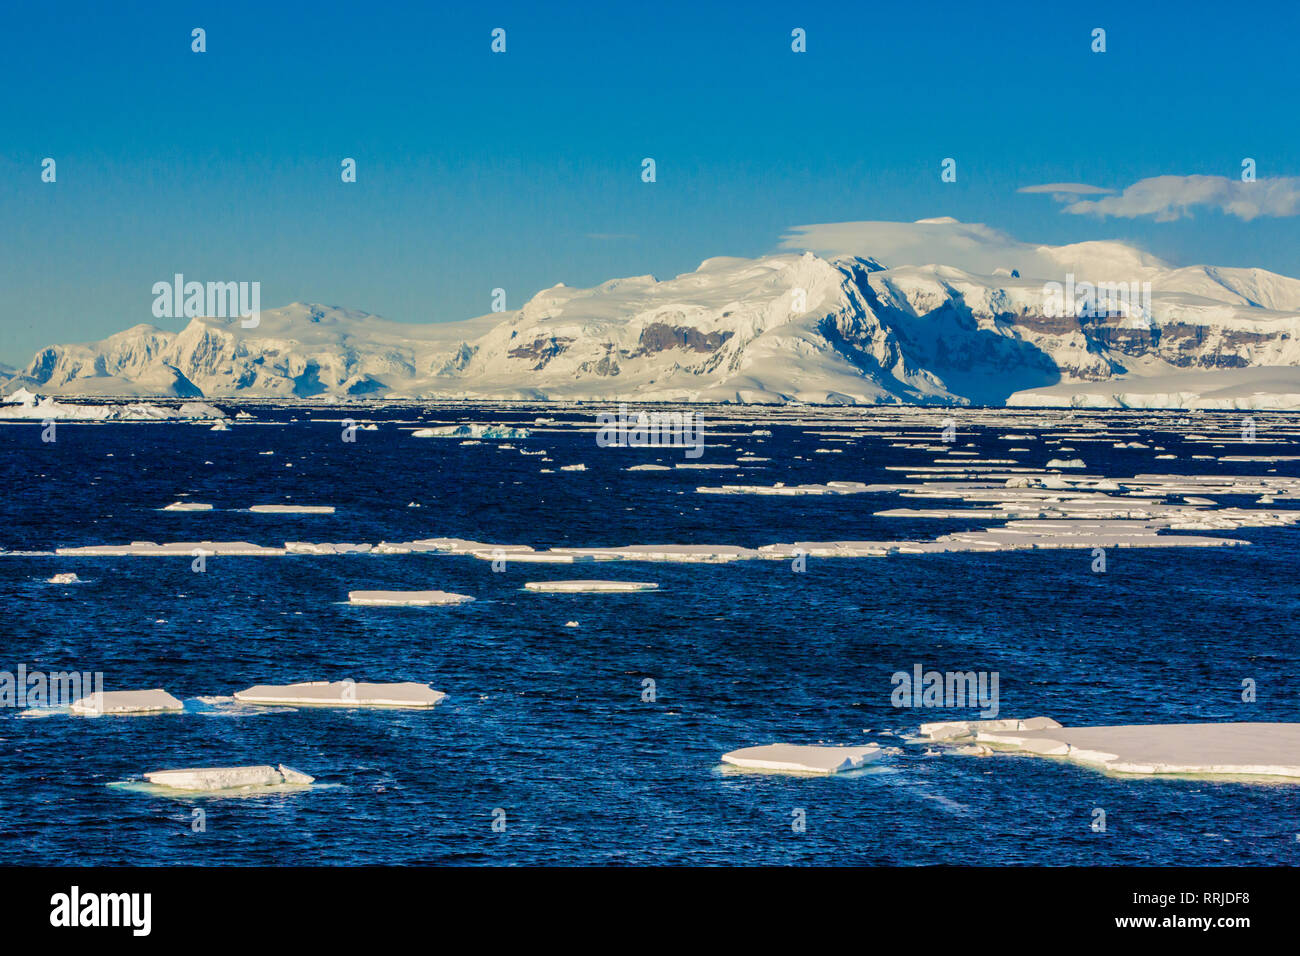 Vue panoramique sur la glace des glaciers et des icebergs dans l'Antarctique, régions polaires Banque D'Images